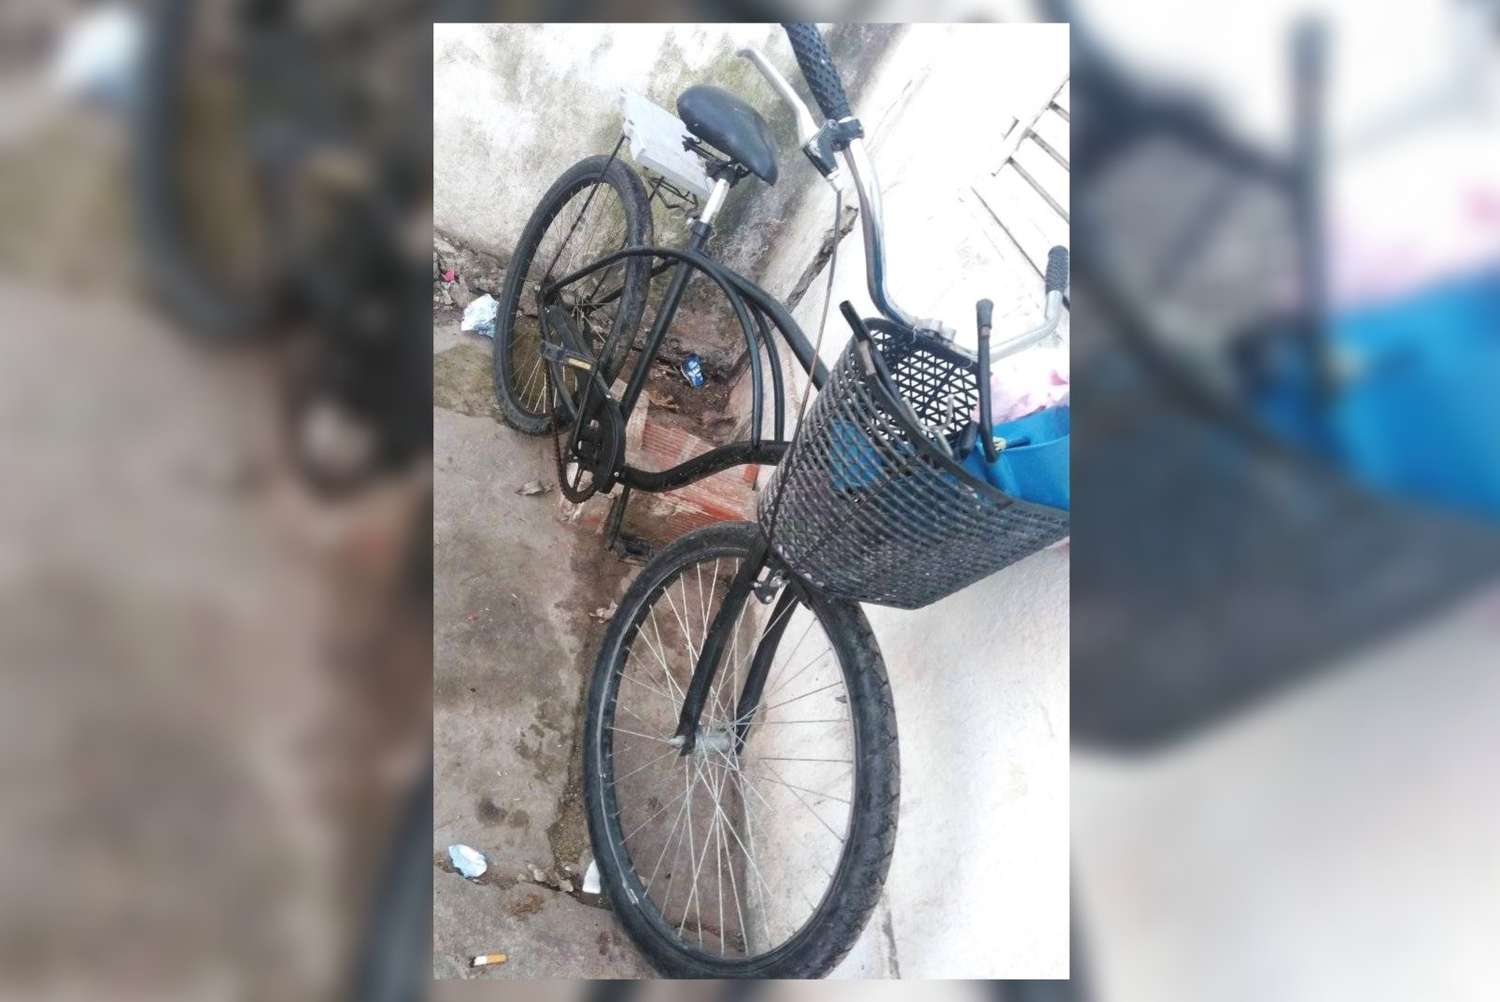 Llegaba a su casa y la asaltaron para robarle la bicicleta y la mochila